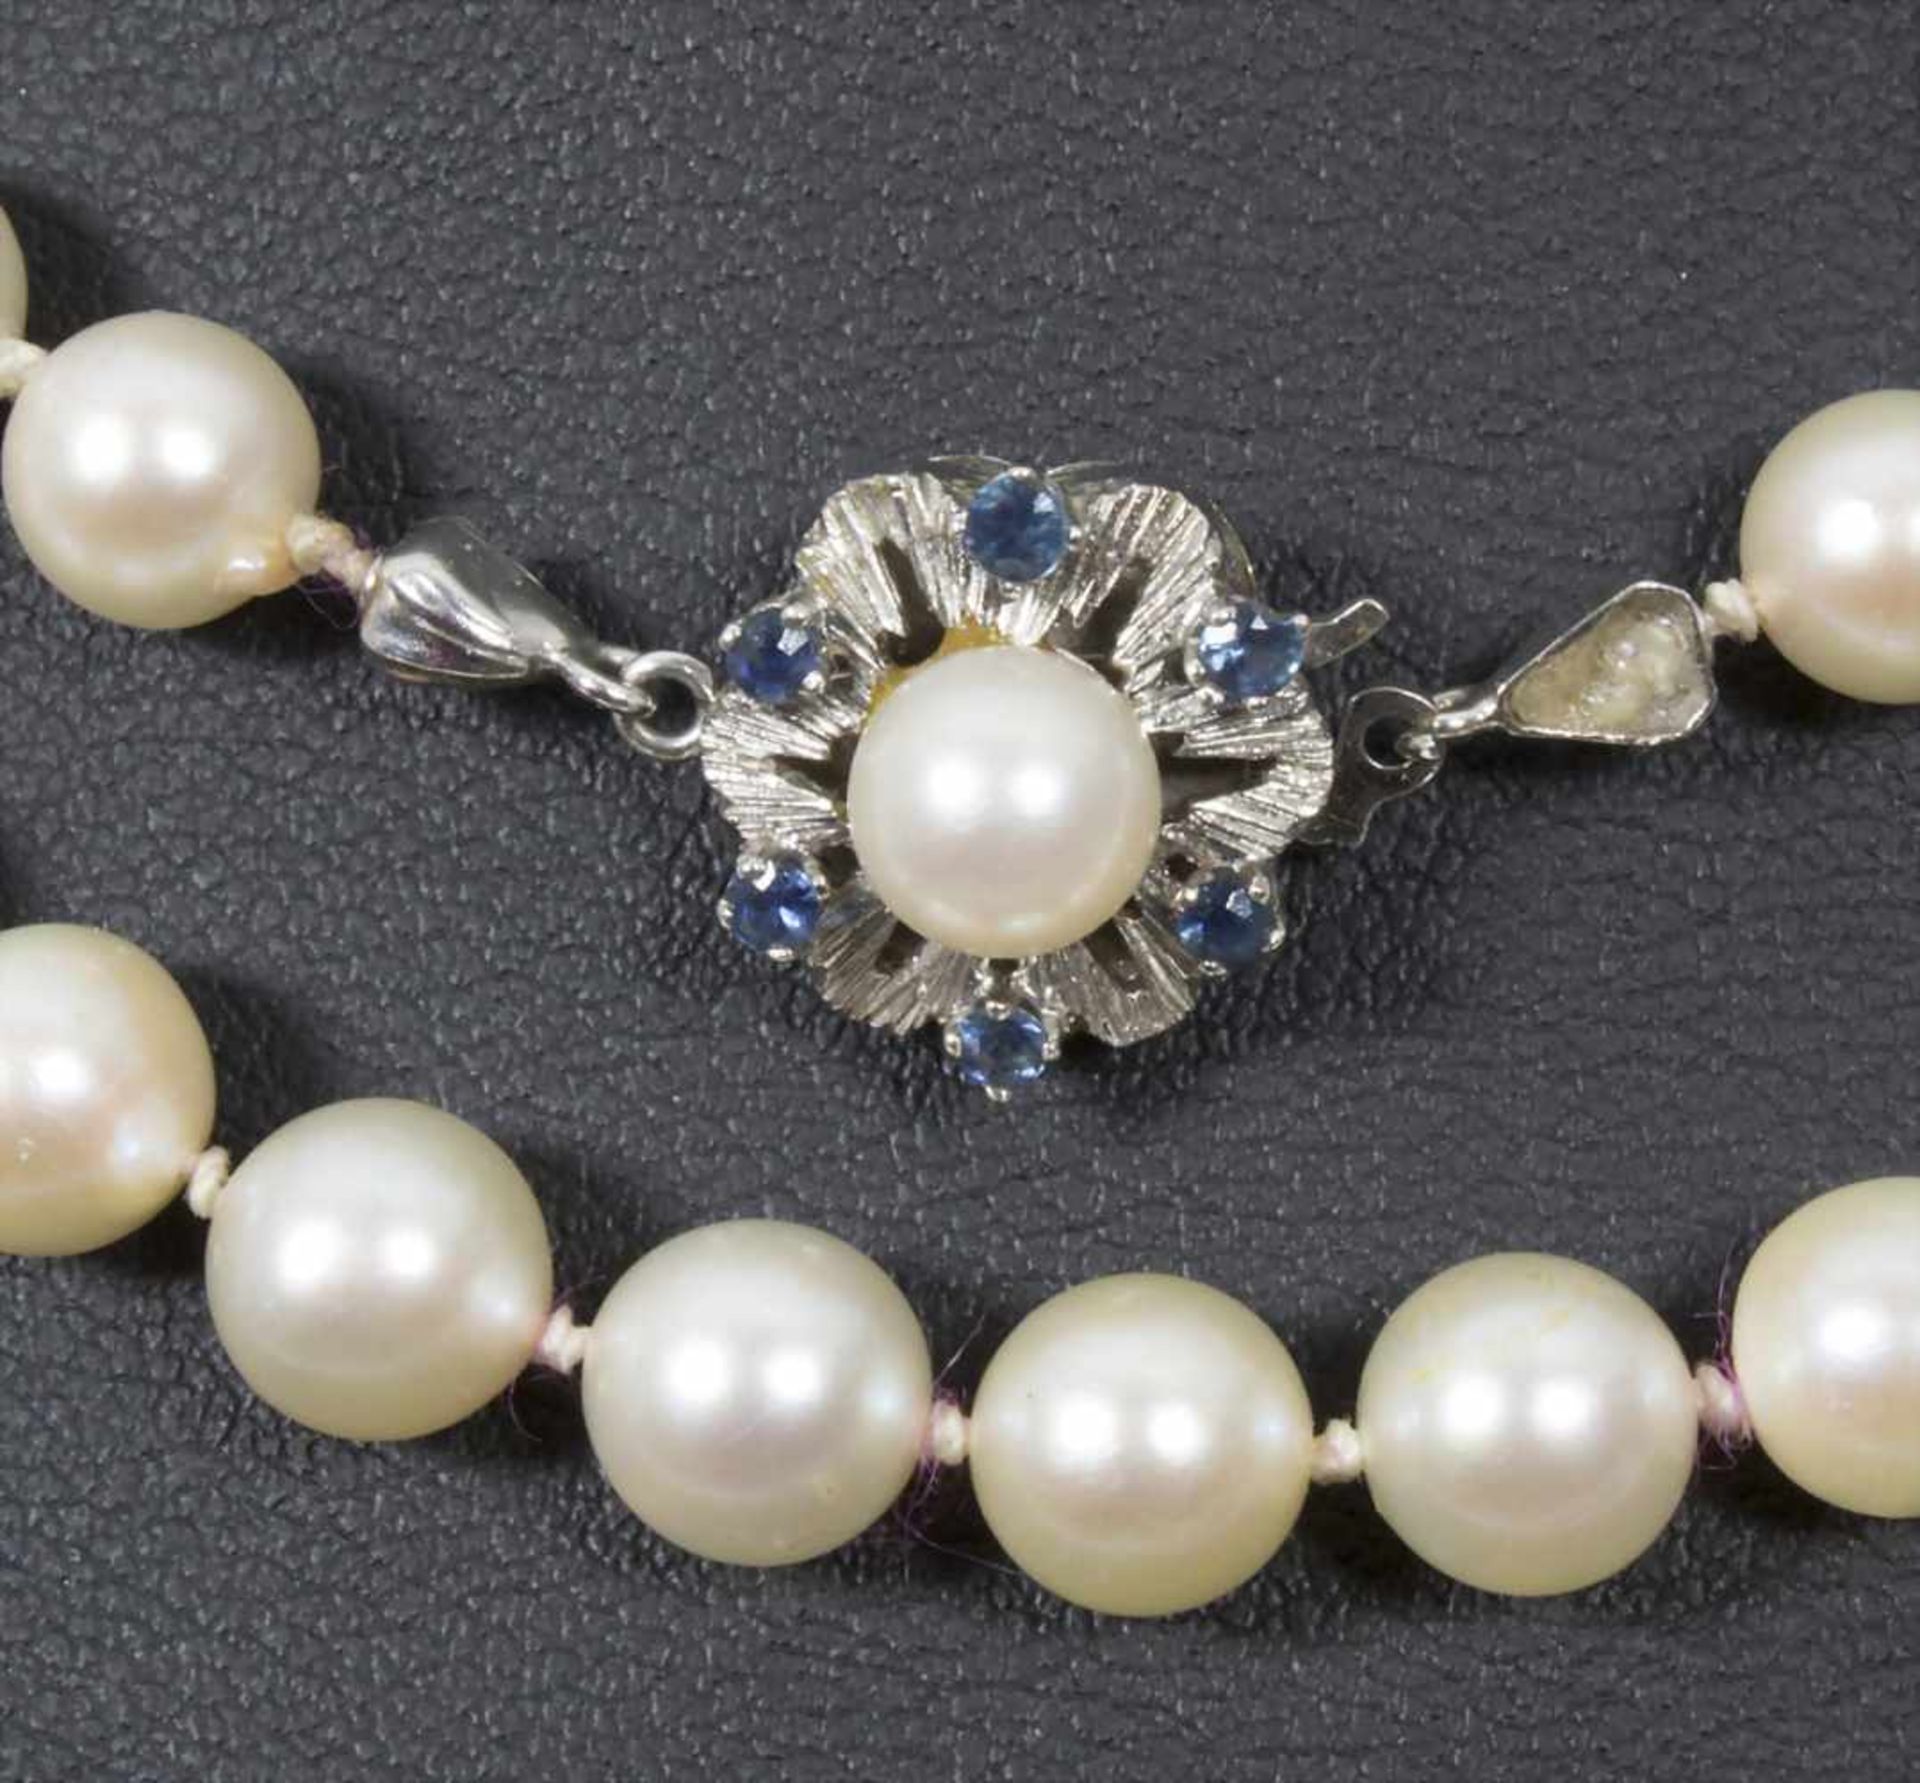 2 Perlenketten / Two pearl necklacesMaterial: Perlen einzeln geknotet, Verschluss Weißgold WG 585/ - Bild 3 aus 5